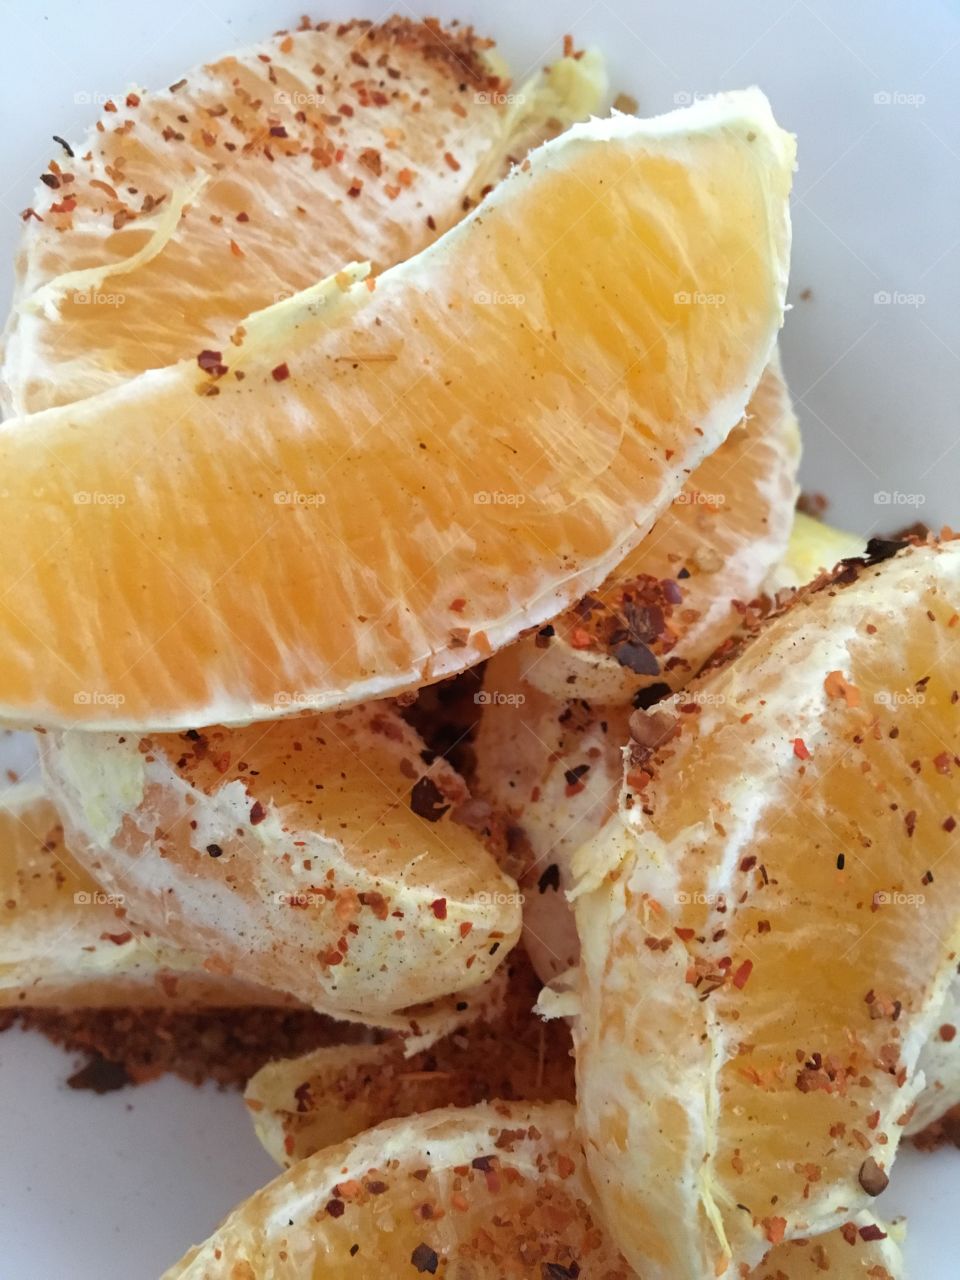 Spicy orange slices